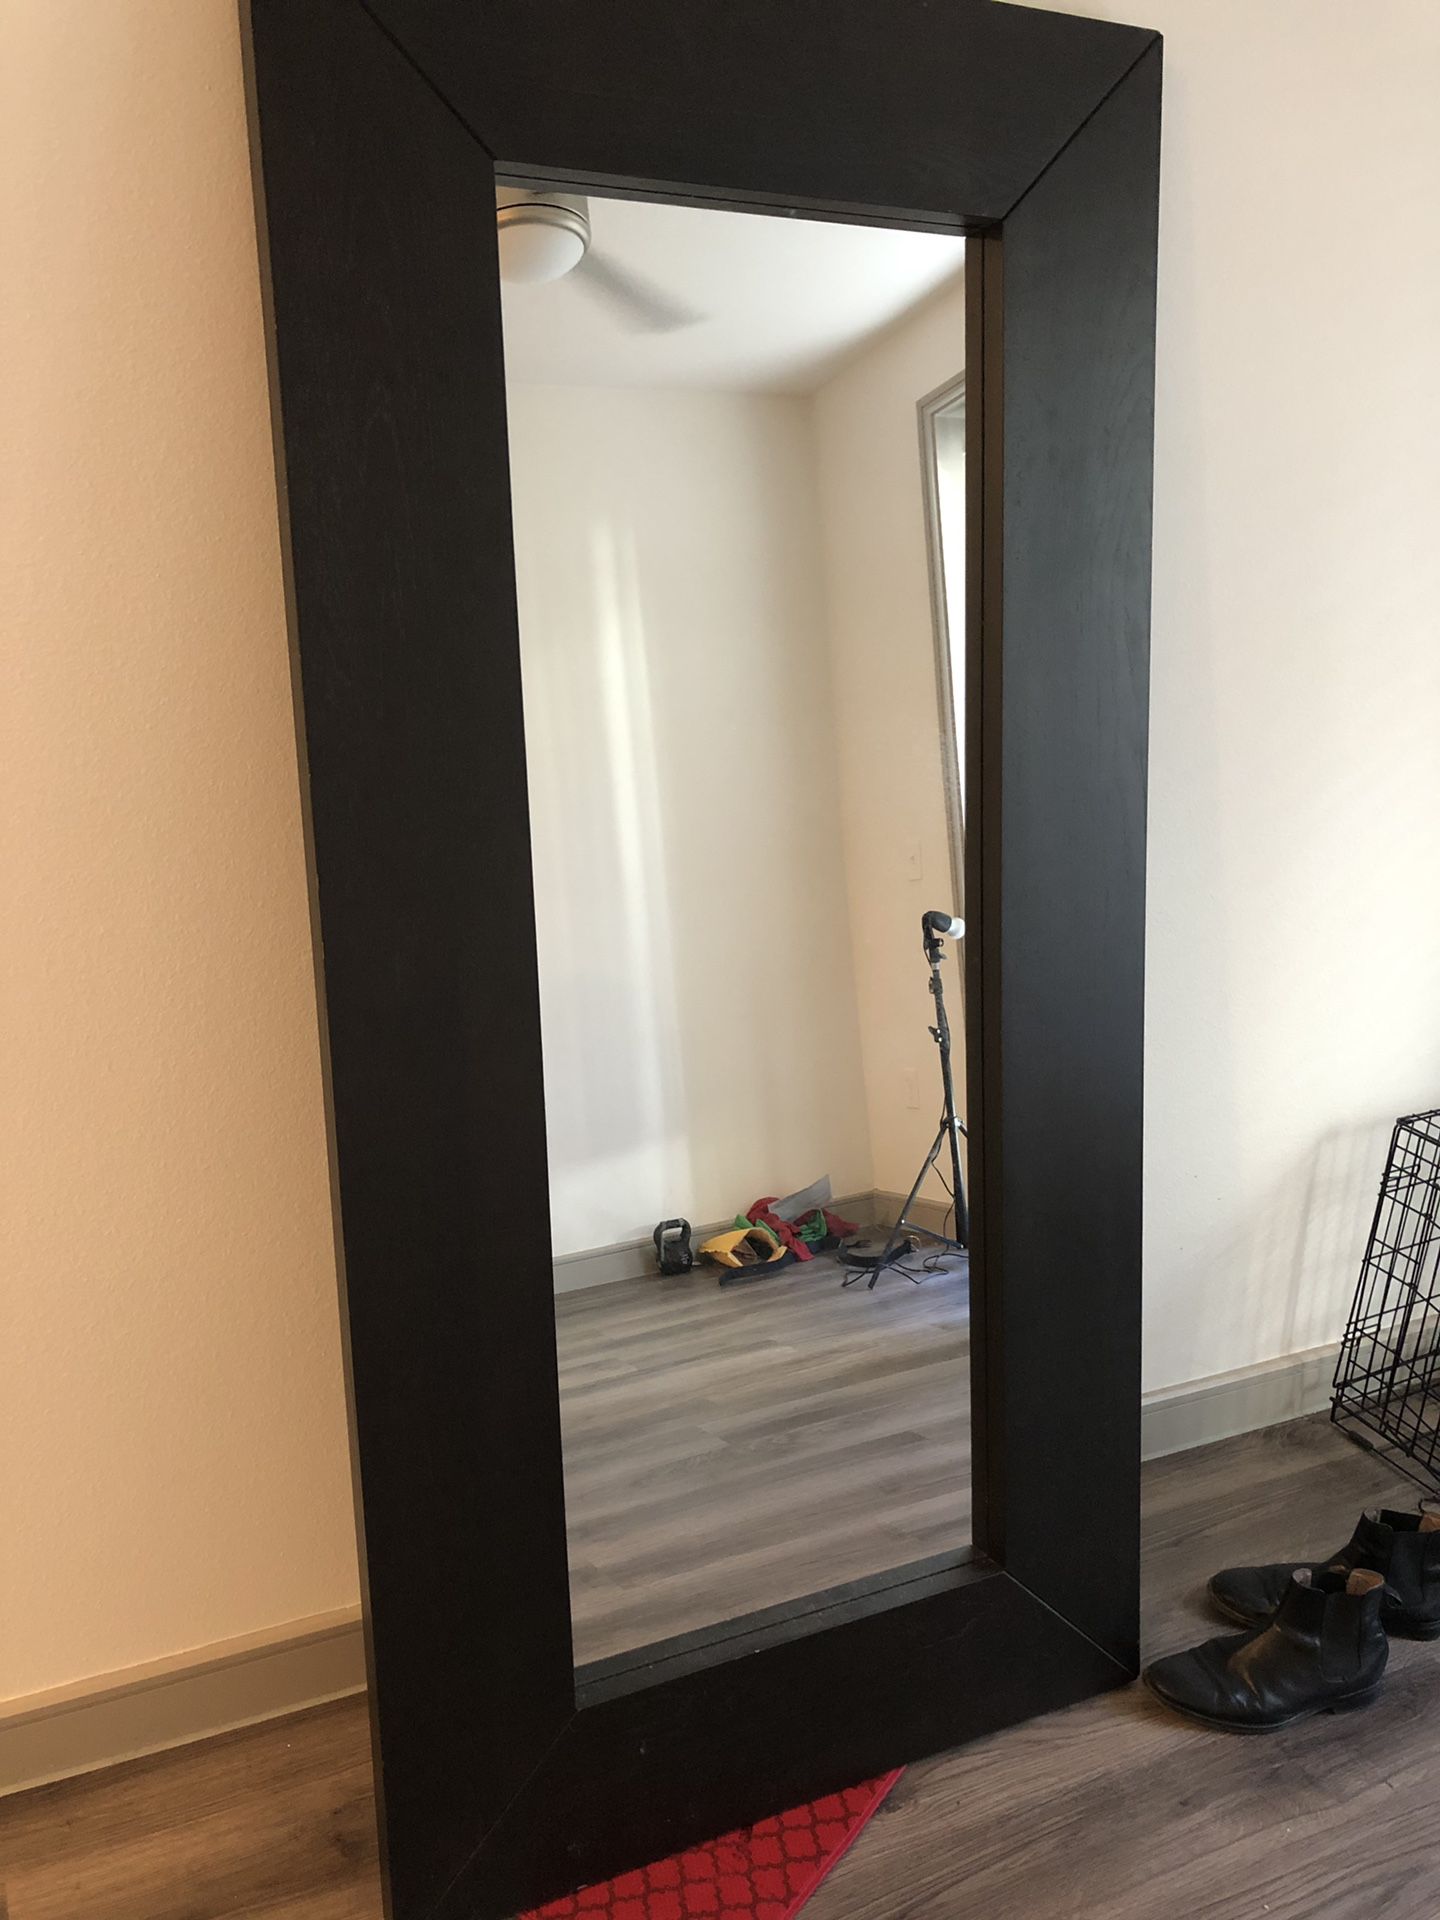 6 foot tall glass mirror